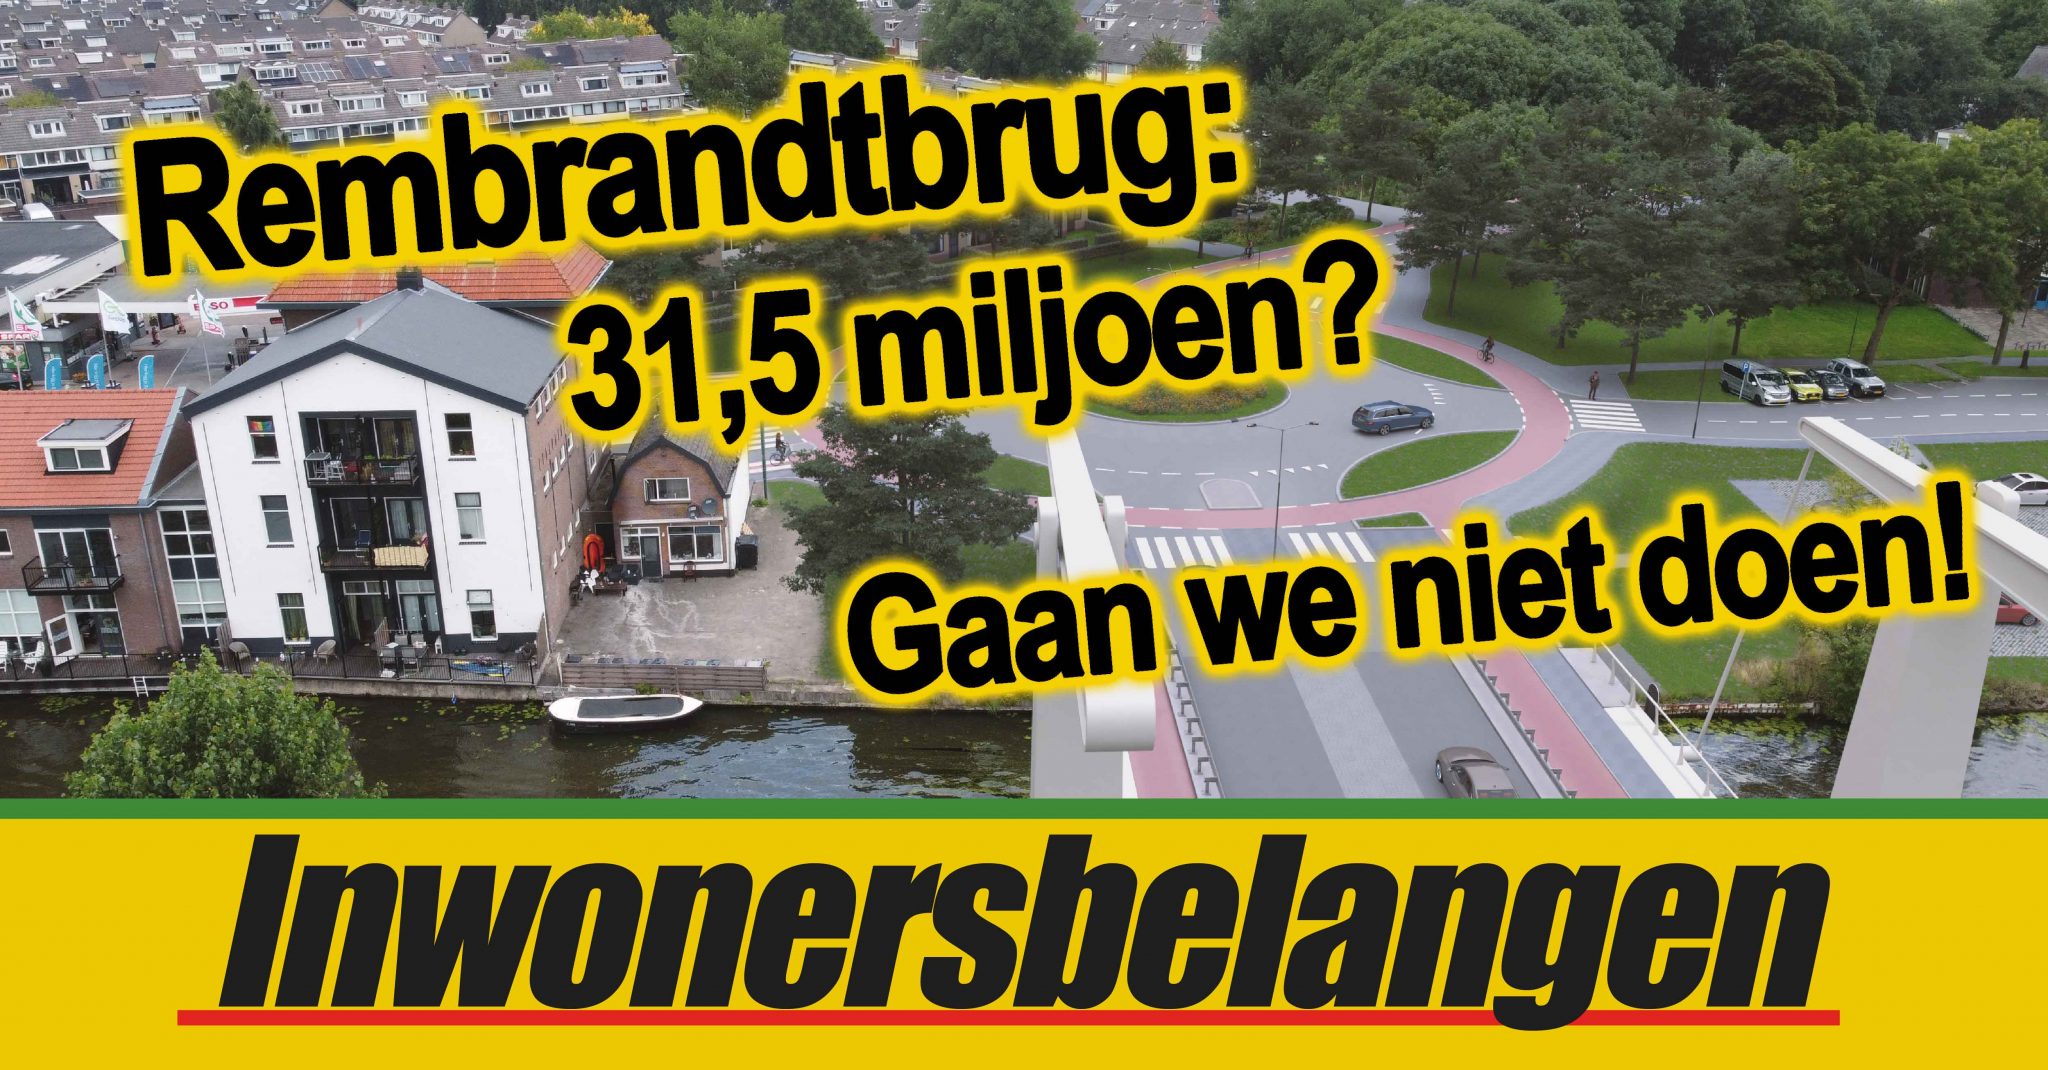 Rembrandtbrug 31,5 miljoen – gaan we niet doen